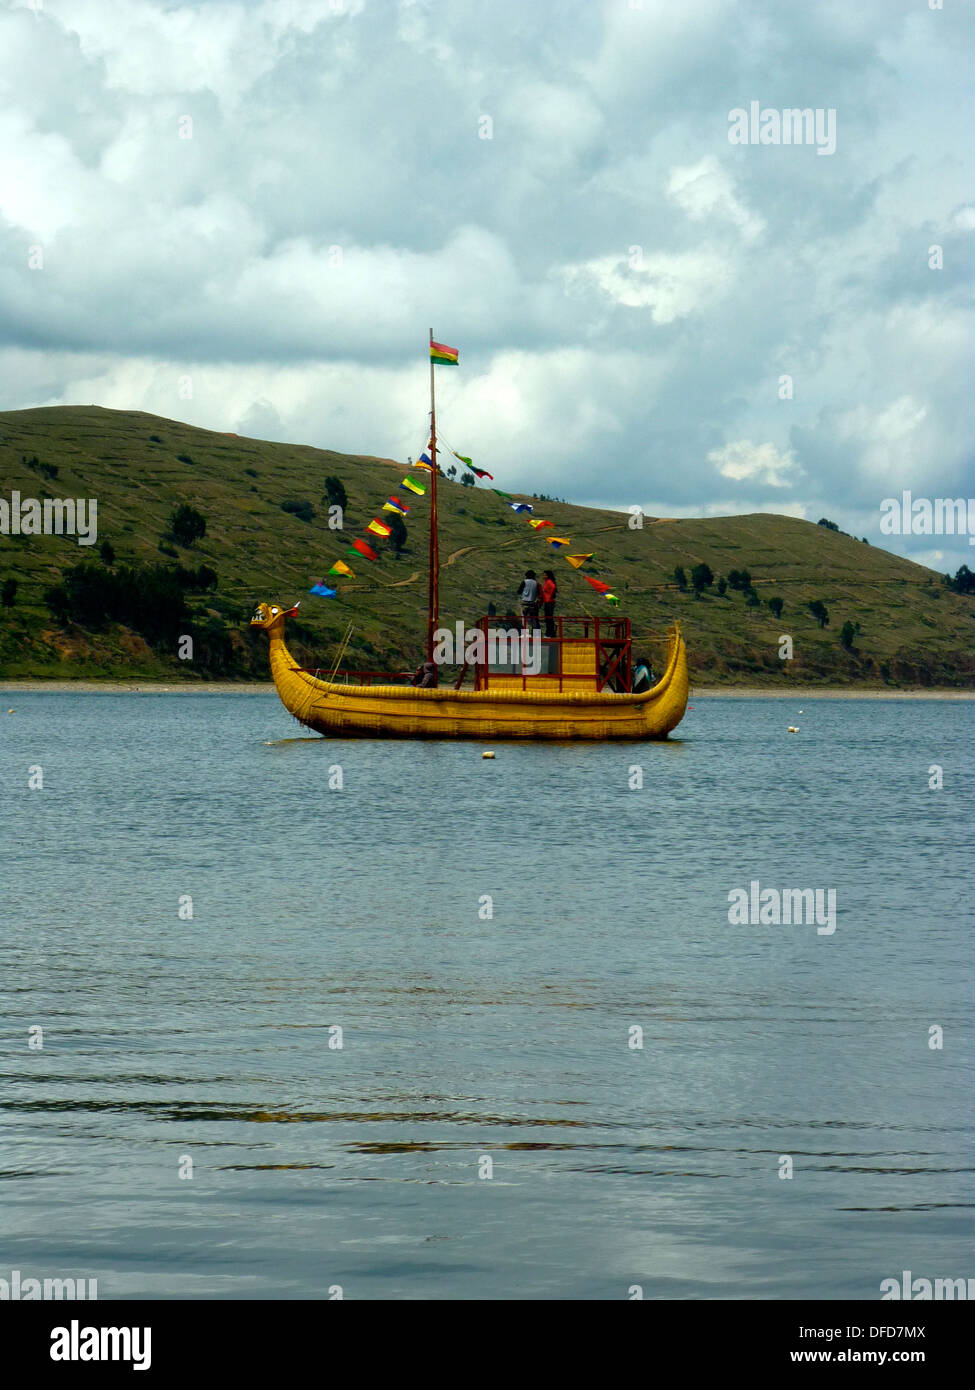 File:Bote de pesca Lago Titicaca.jpg - Wikimedia Commons